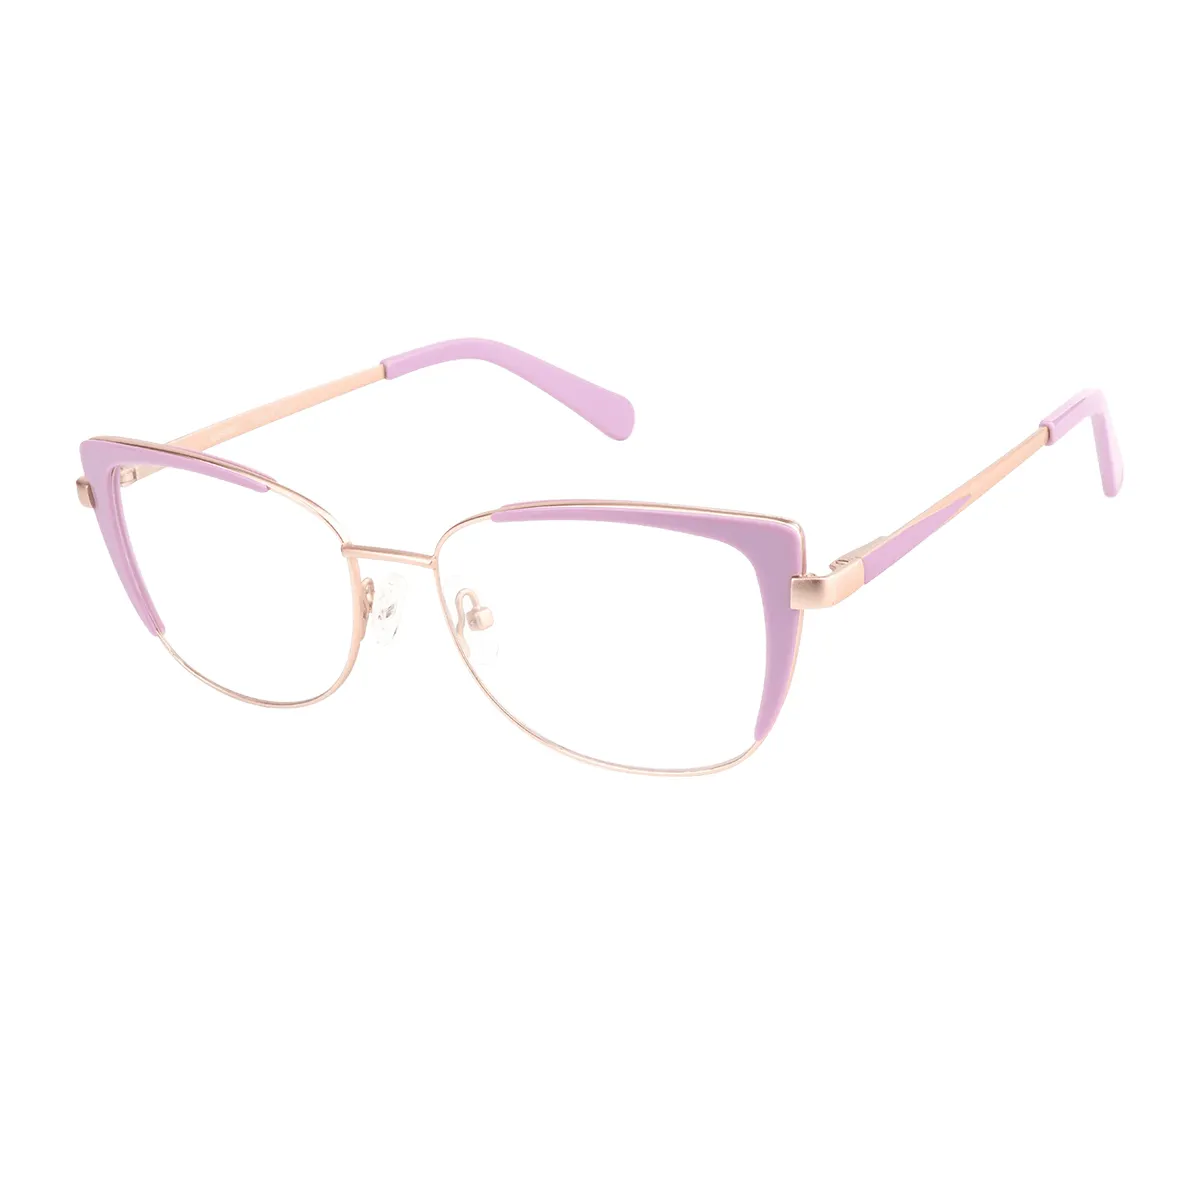 Alvira - Square Pink Glasses for Women